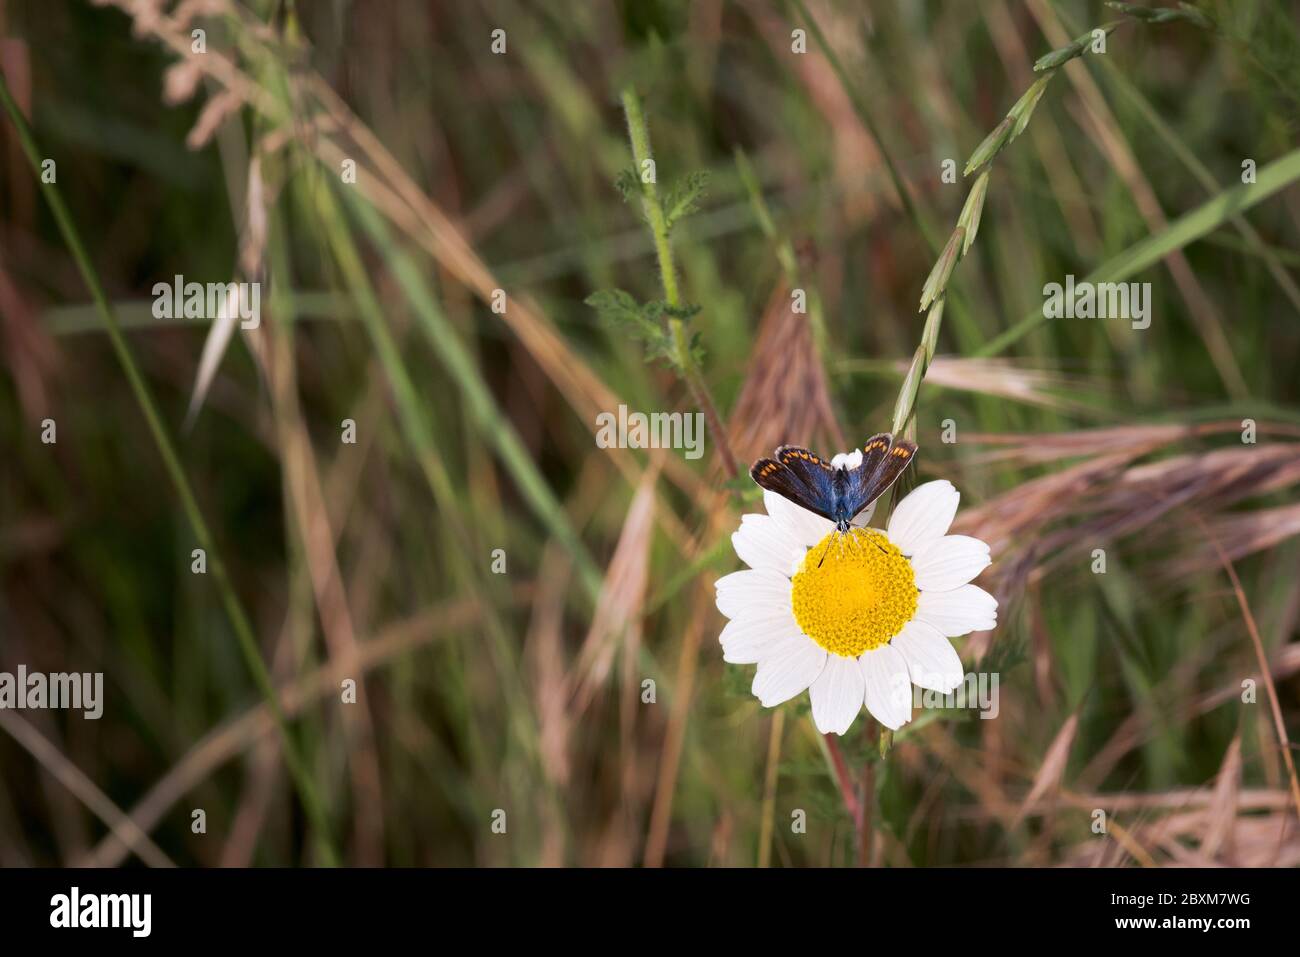 mariposa con alas de color gris marrón con bandas rojizas, erebia palarica, alimentándose sobre flores silvestres en primavera. Vista dorsal Foto de stock